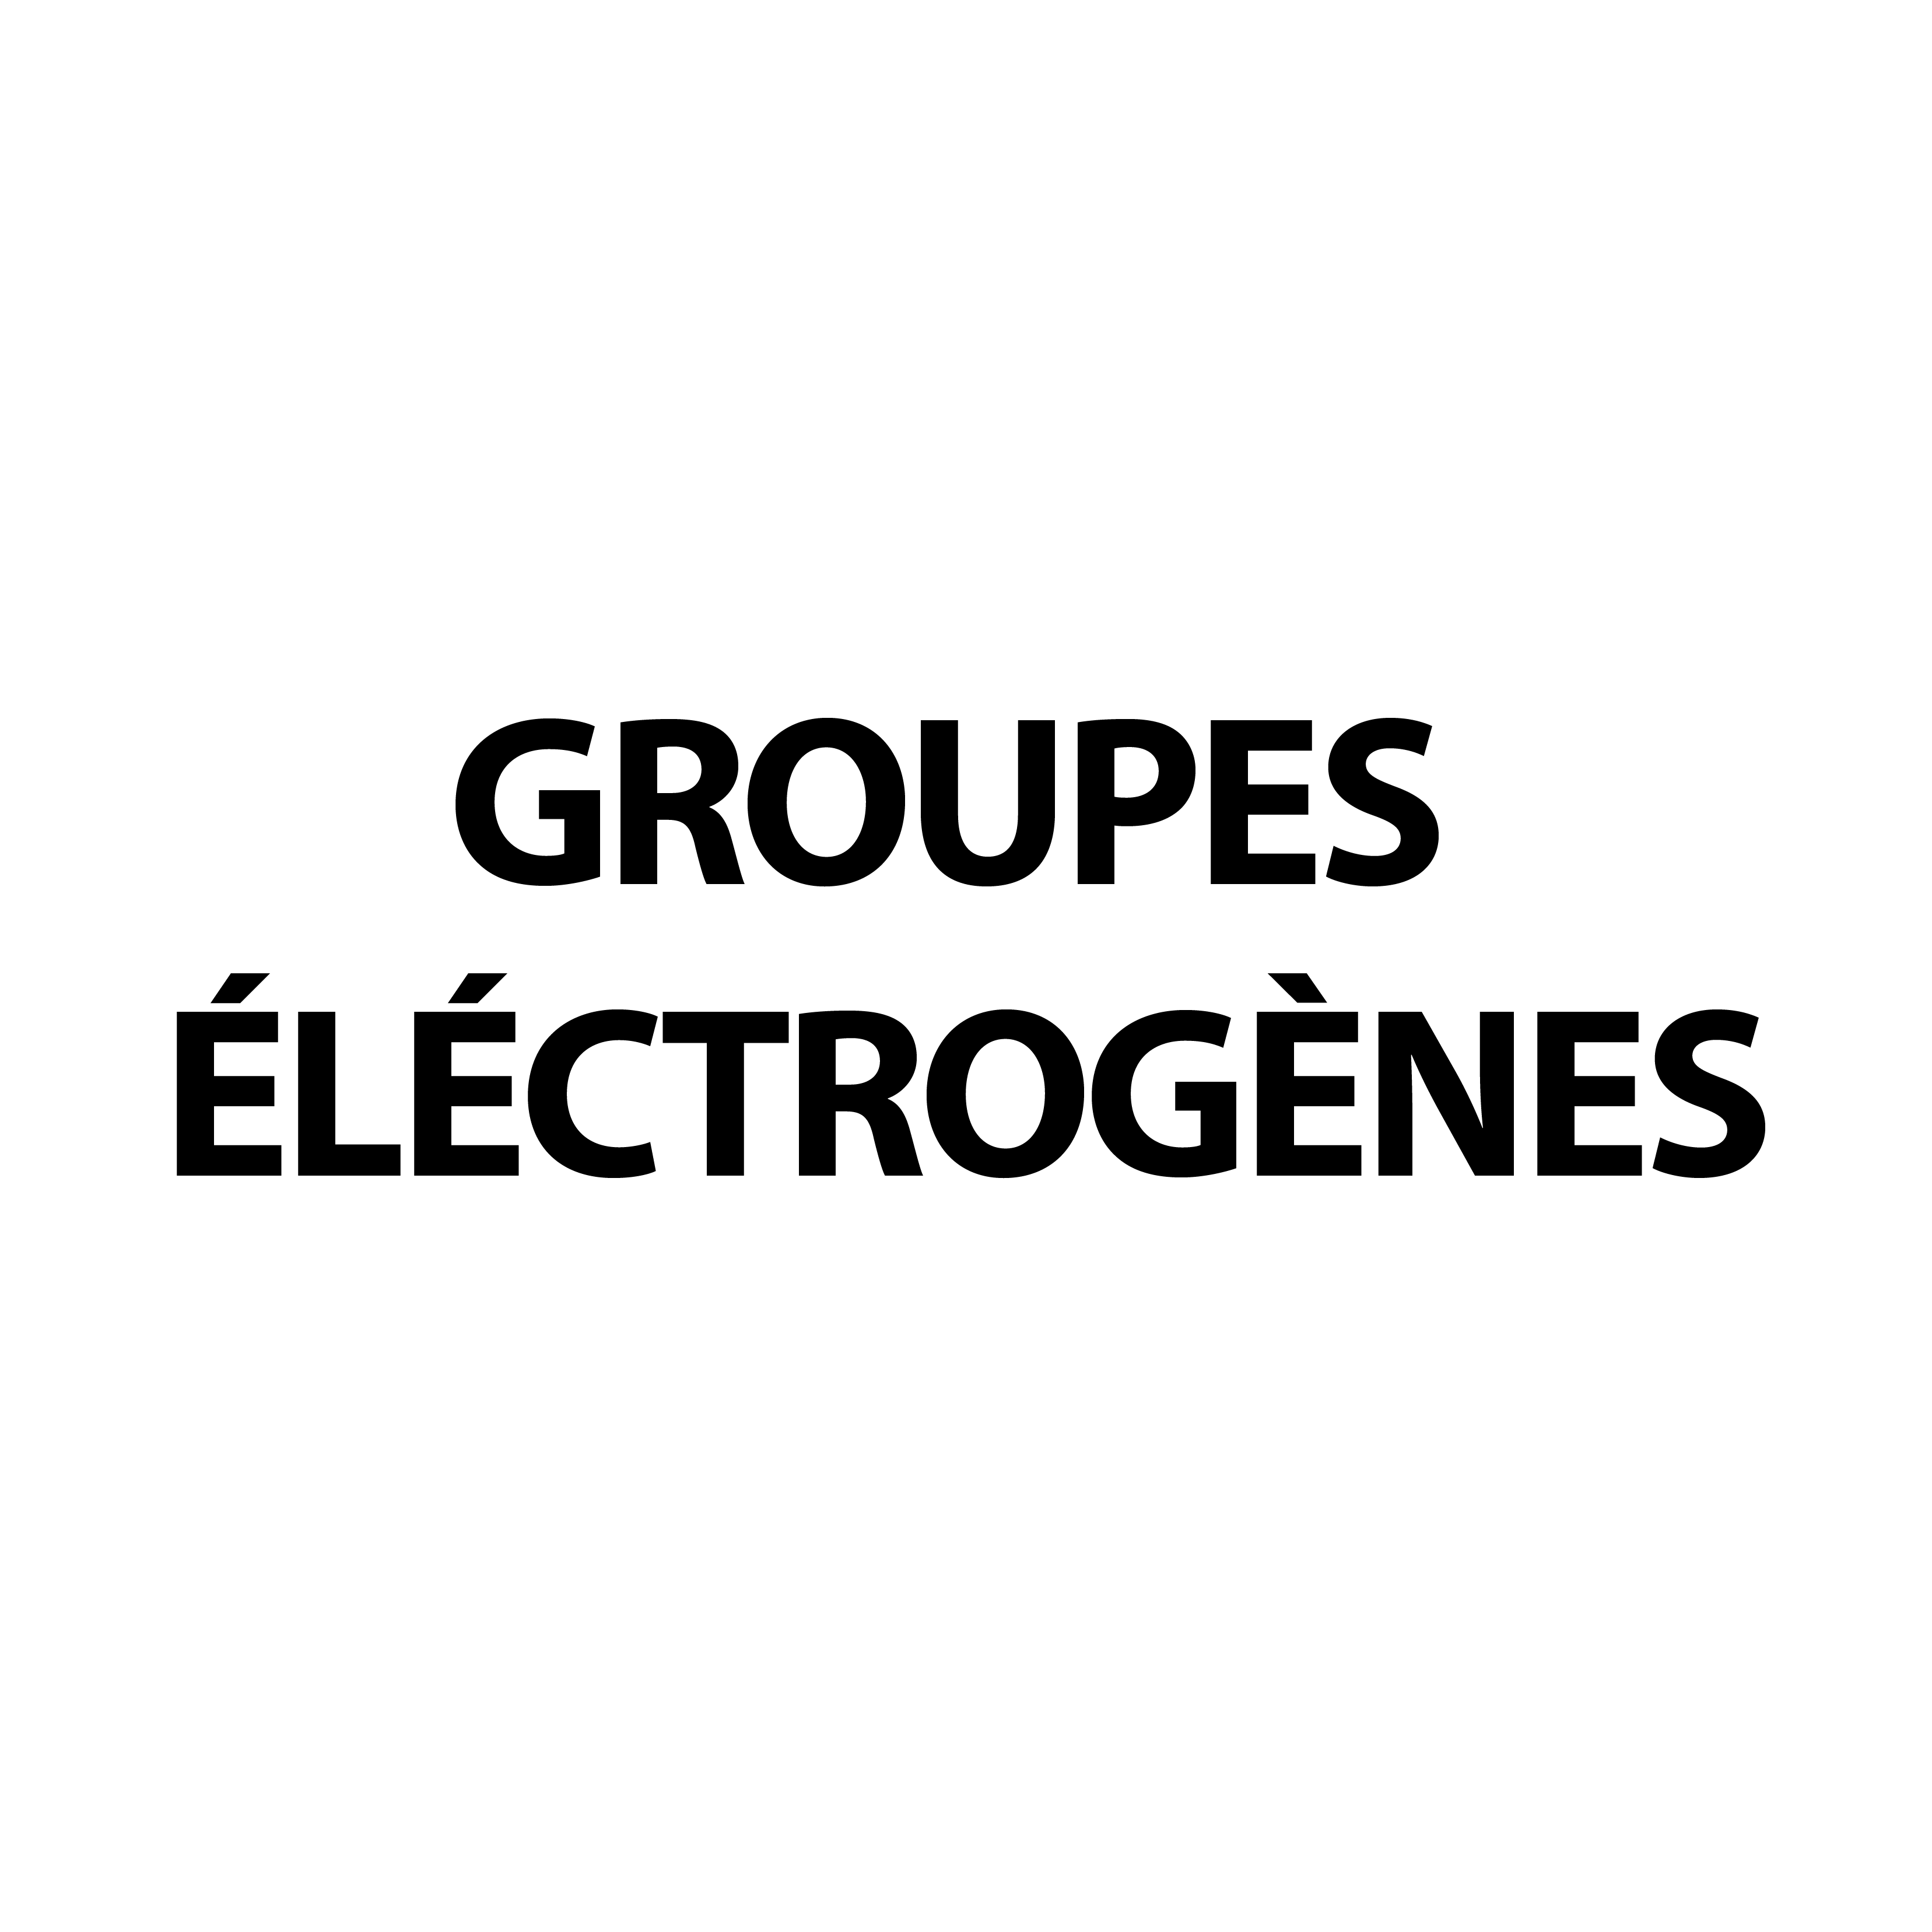 Groupes électrogènes